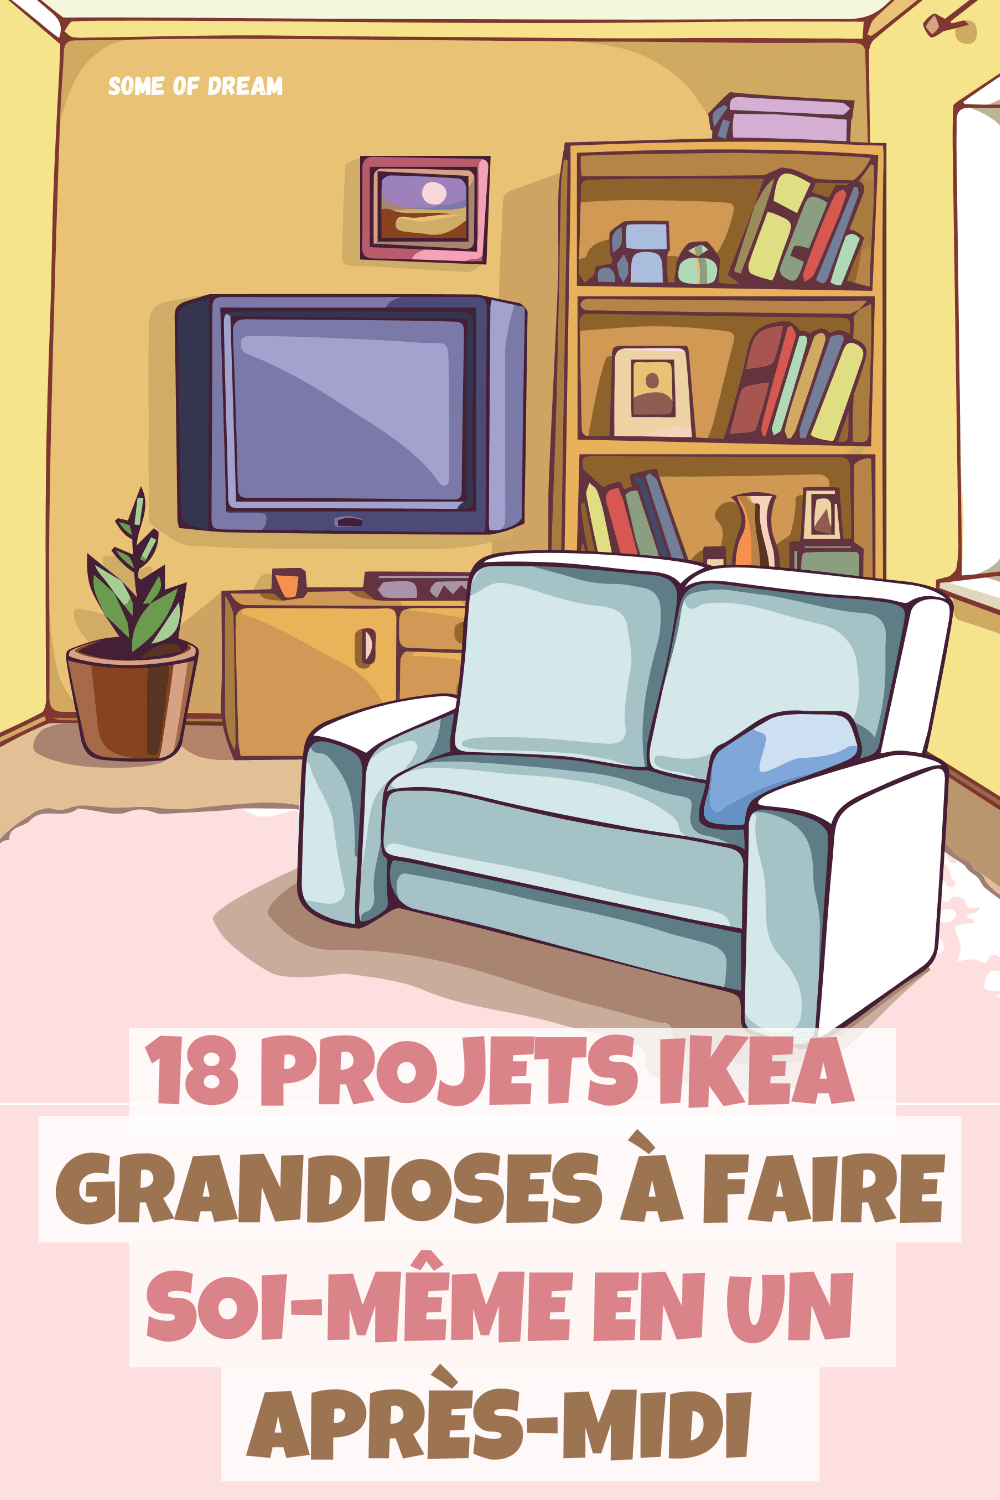 18 Projets Ikea Grandioses à Faire Soi-même en un après-midi